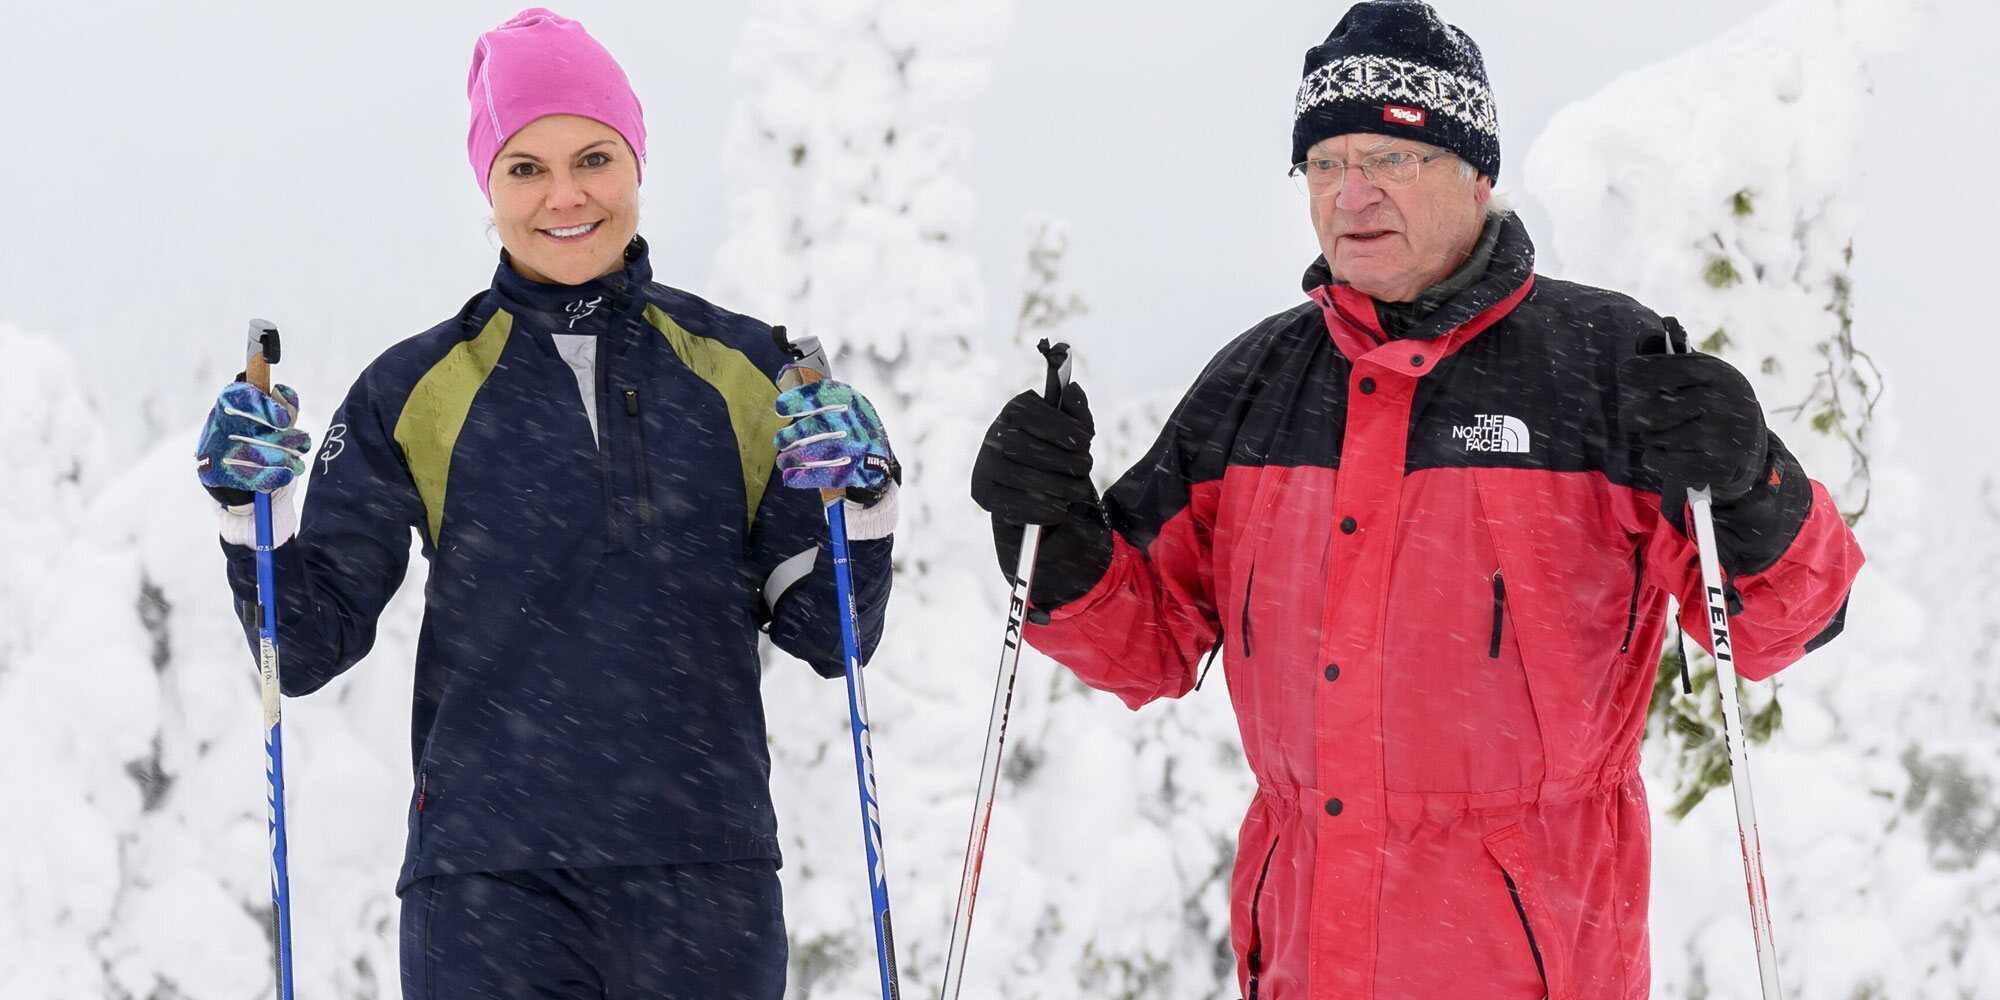 Carlos Gustavo de Suecia y su hija Victoria de Suecia sellan la paz: comunicado y salida conjunta para pasar página